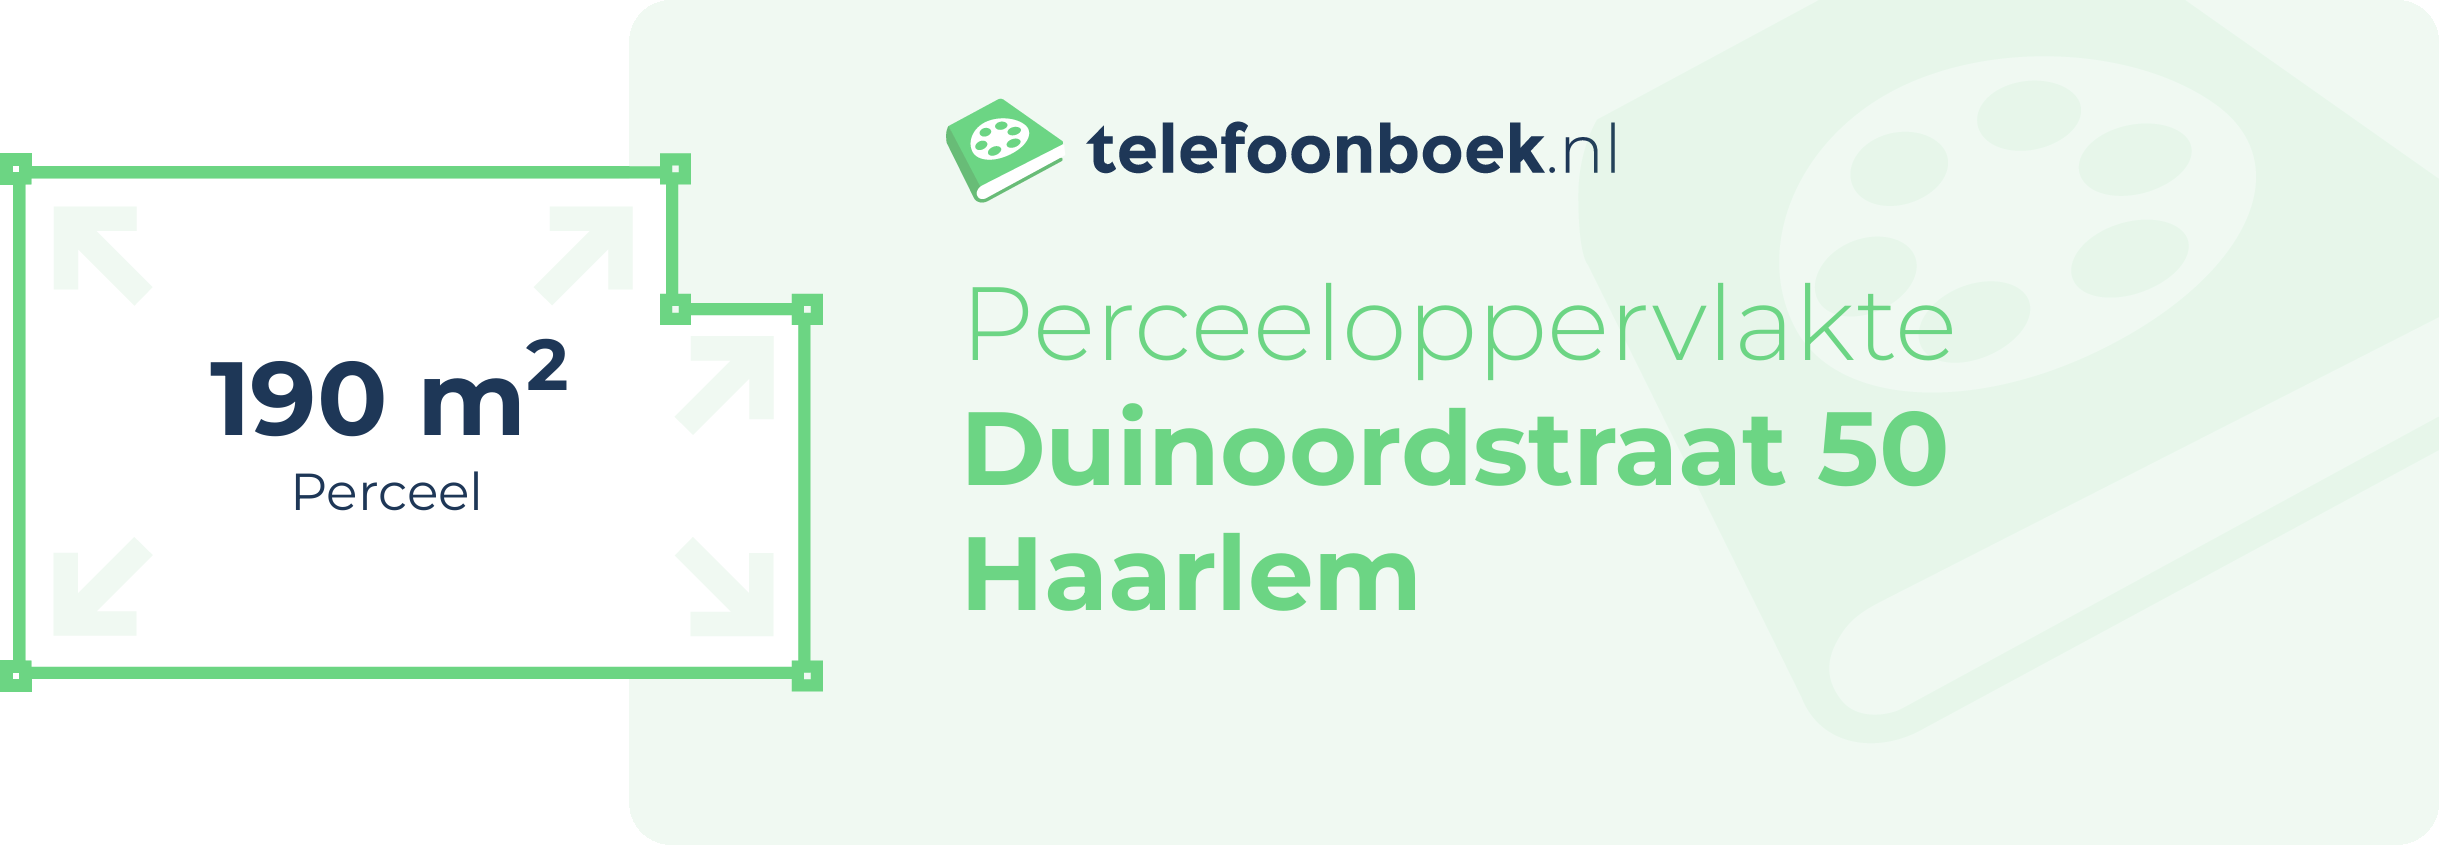 Perceeloppervlakte Duinoordstraat 50 Haarlem